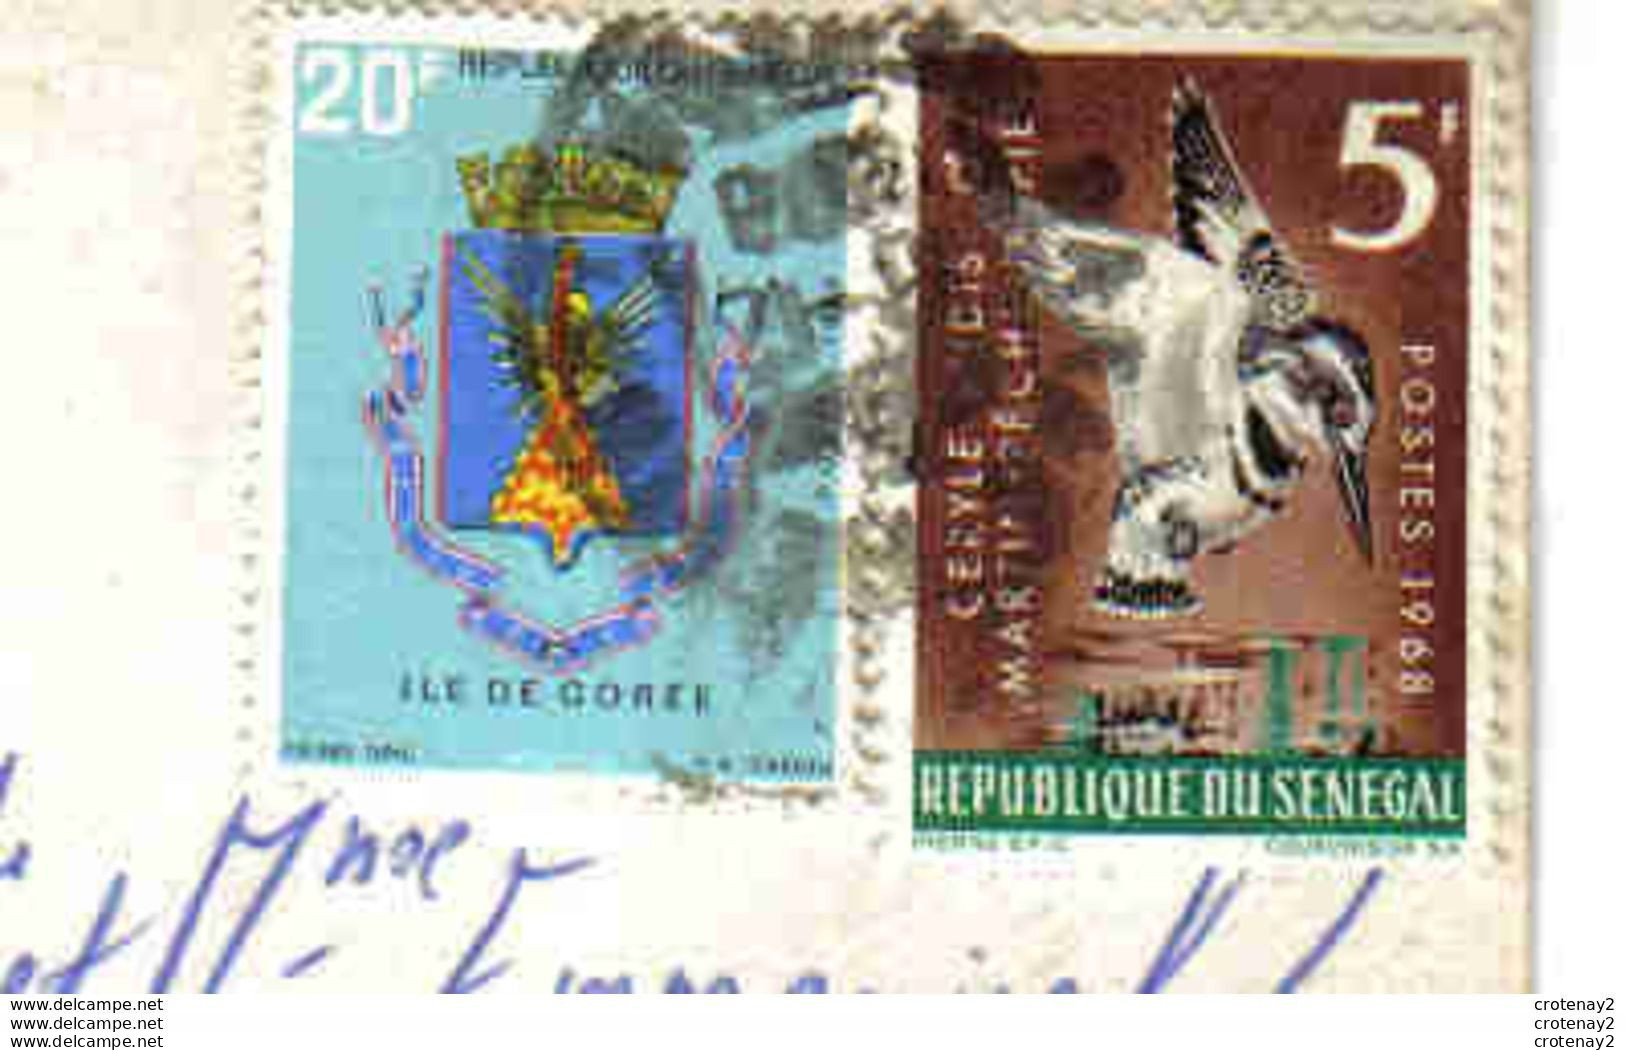 Sénégal DAKAR N°4424 Marché De Poteries En 1970 Animée VOIR 2 TIMBRES Oiseaux - Senegal